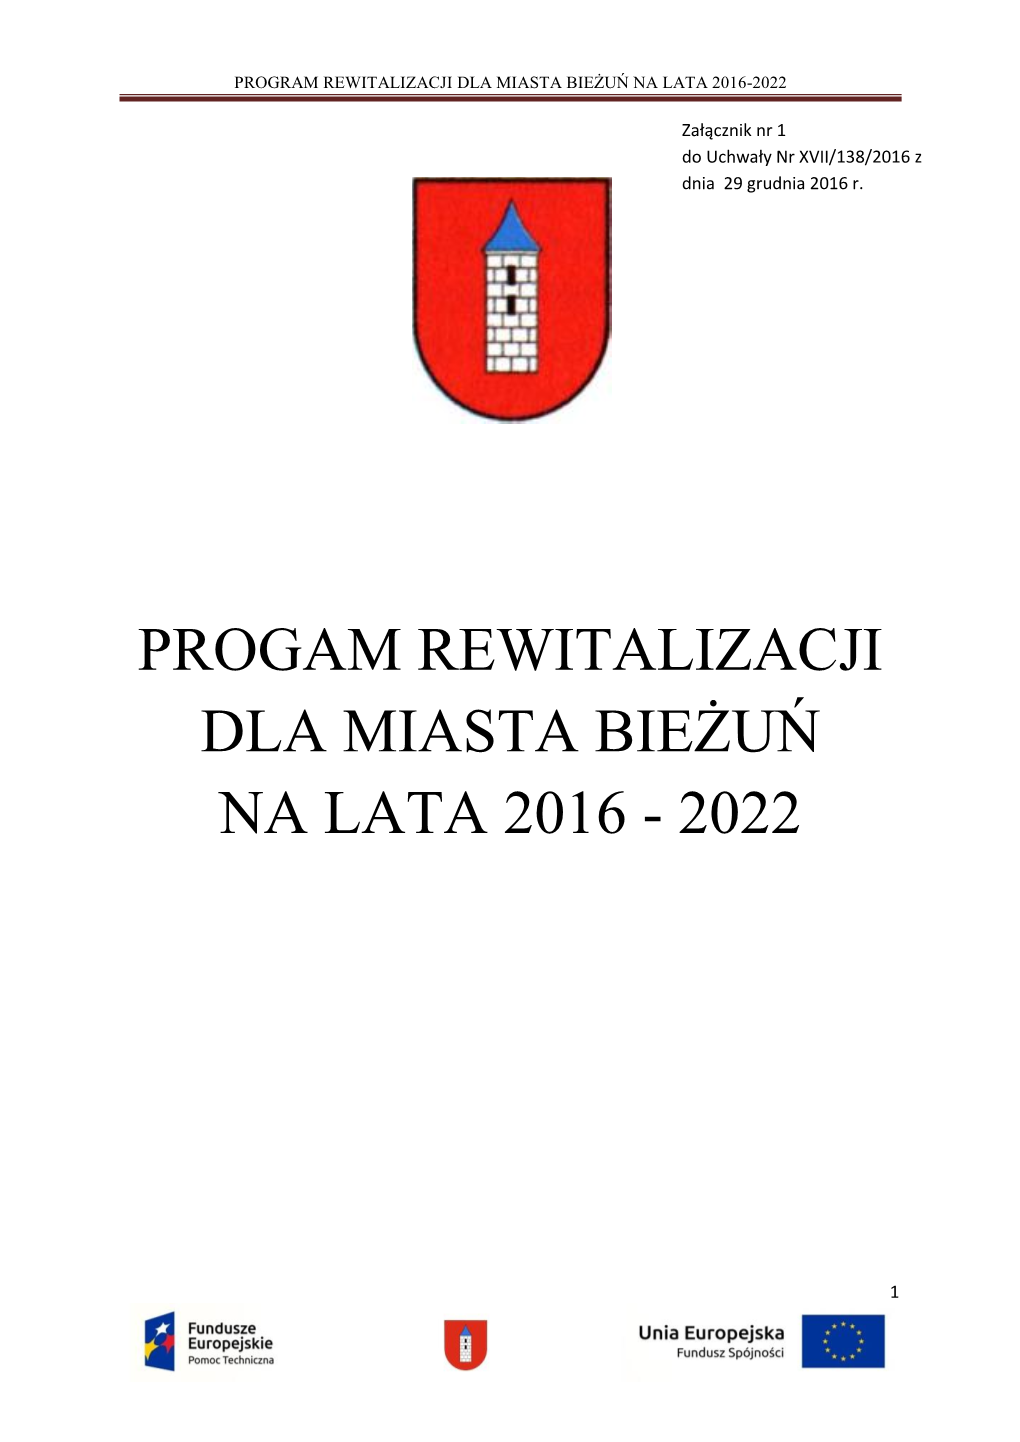 Program Rewitalizacji Dla Miasta Bieżuń Na Lata 2016-2022